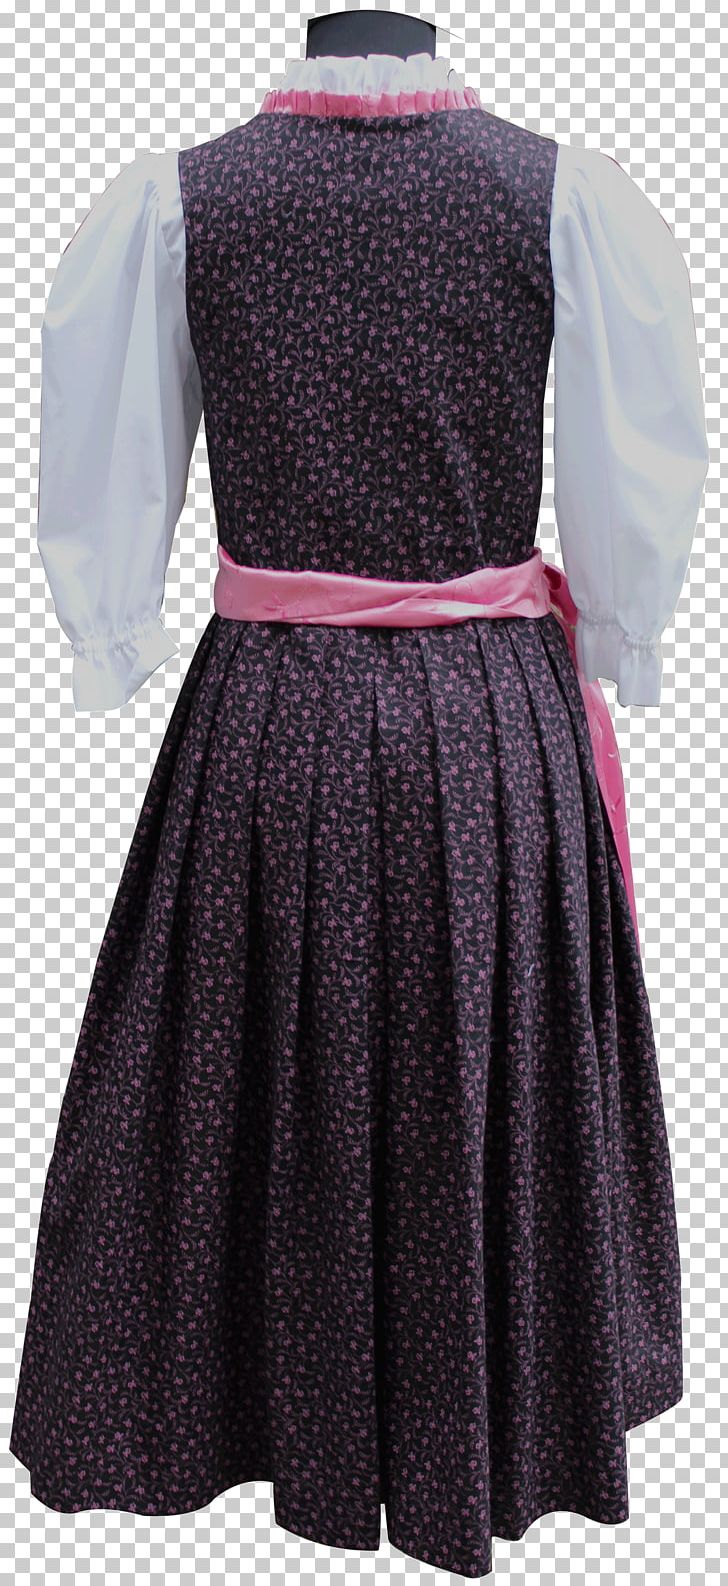 Polka Dot Dirndl Dress Skirt Apron PNG, Clipart, Apron, Black, Clothing, Day Dress, Dirndl Free PNG Download